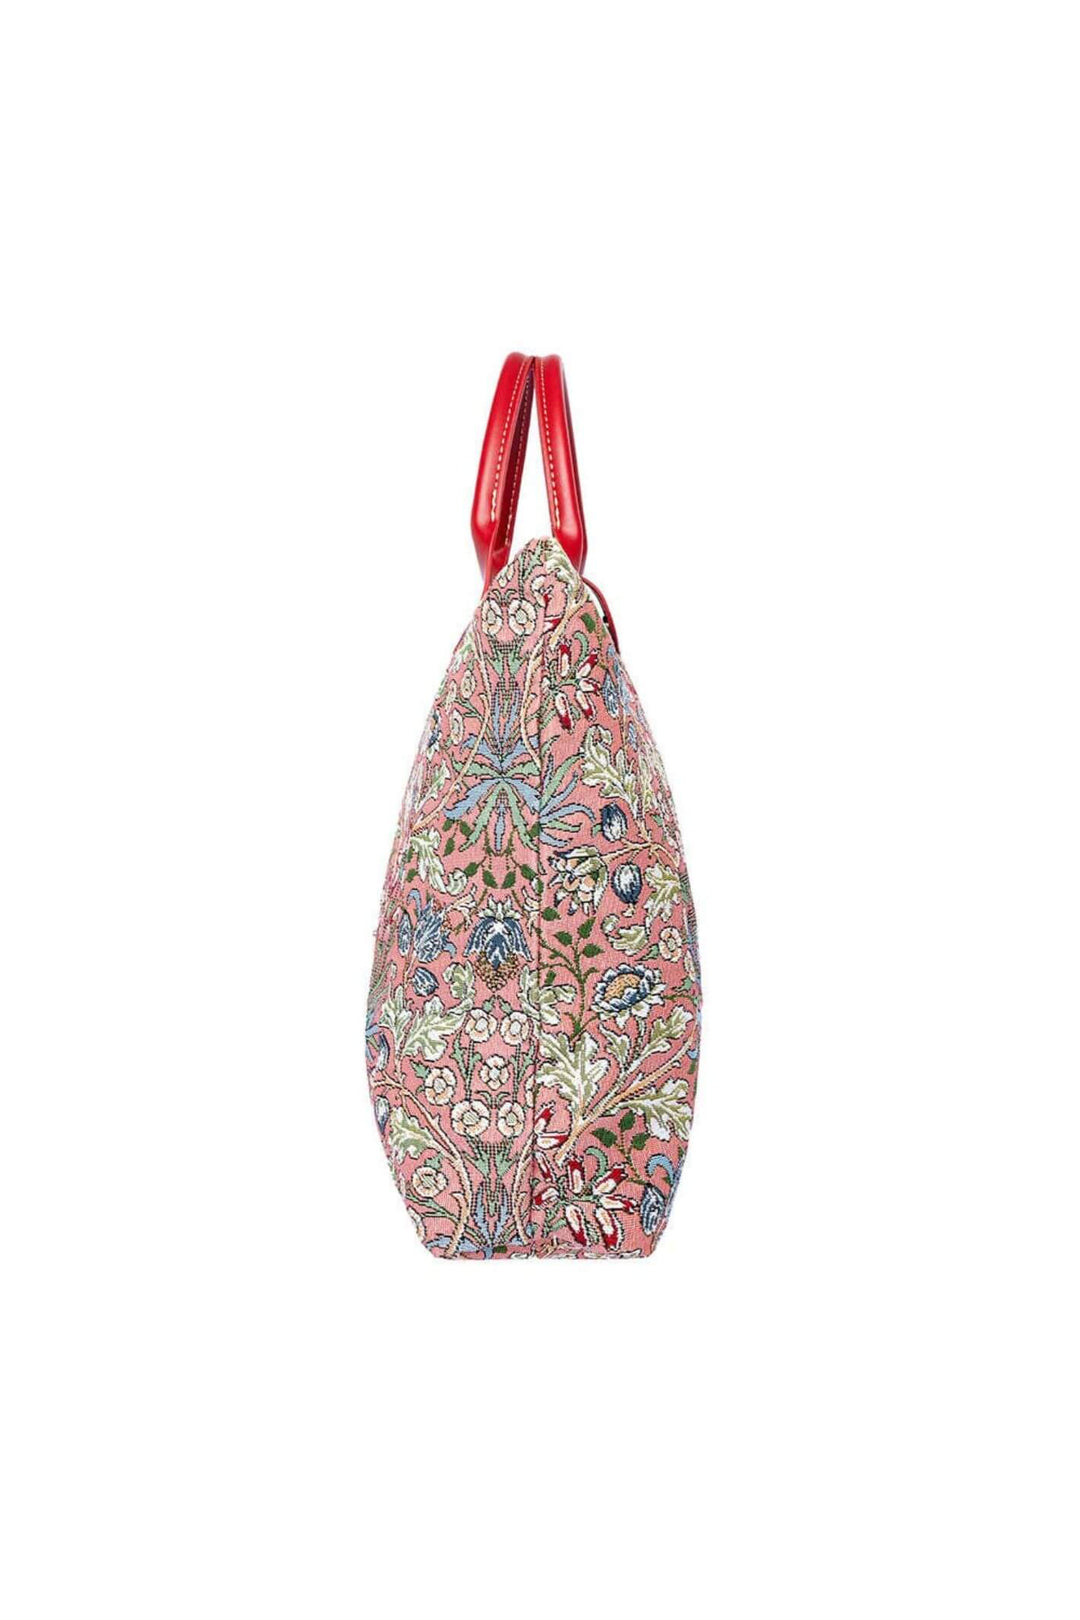 William Morris Hyacinth Le Pliage Folding Tote Bag